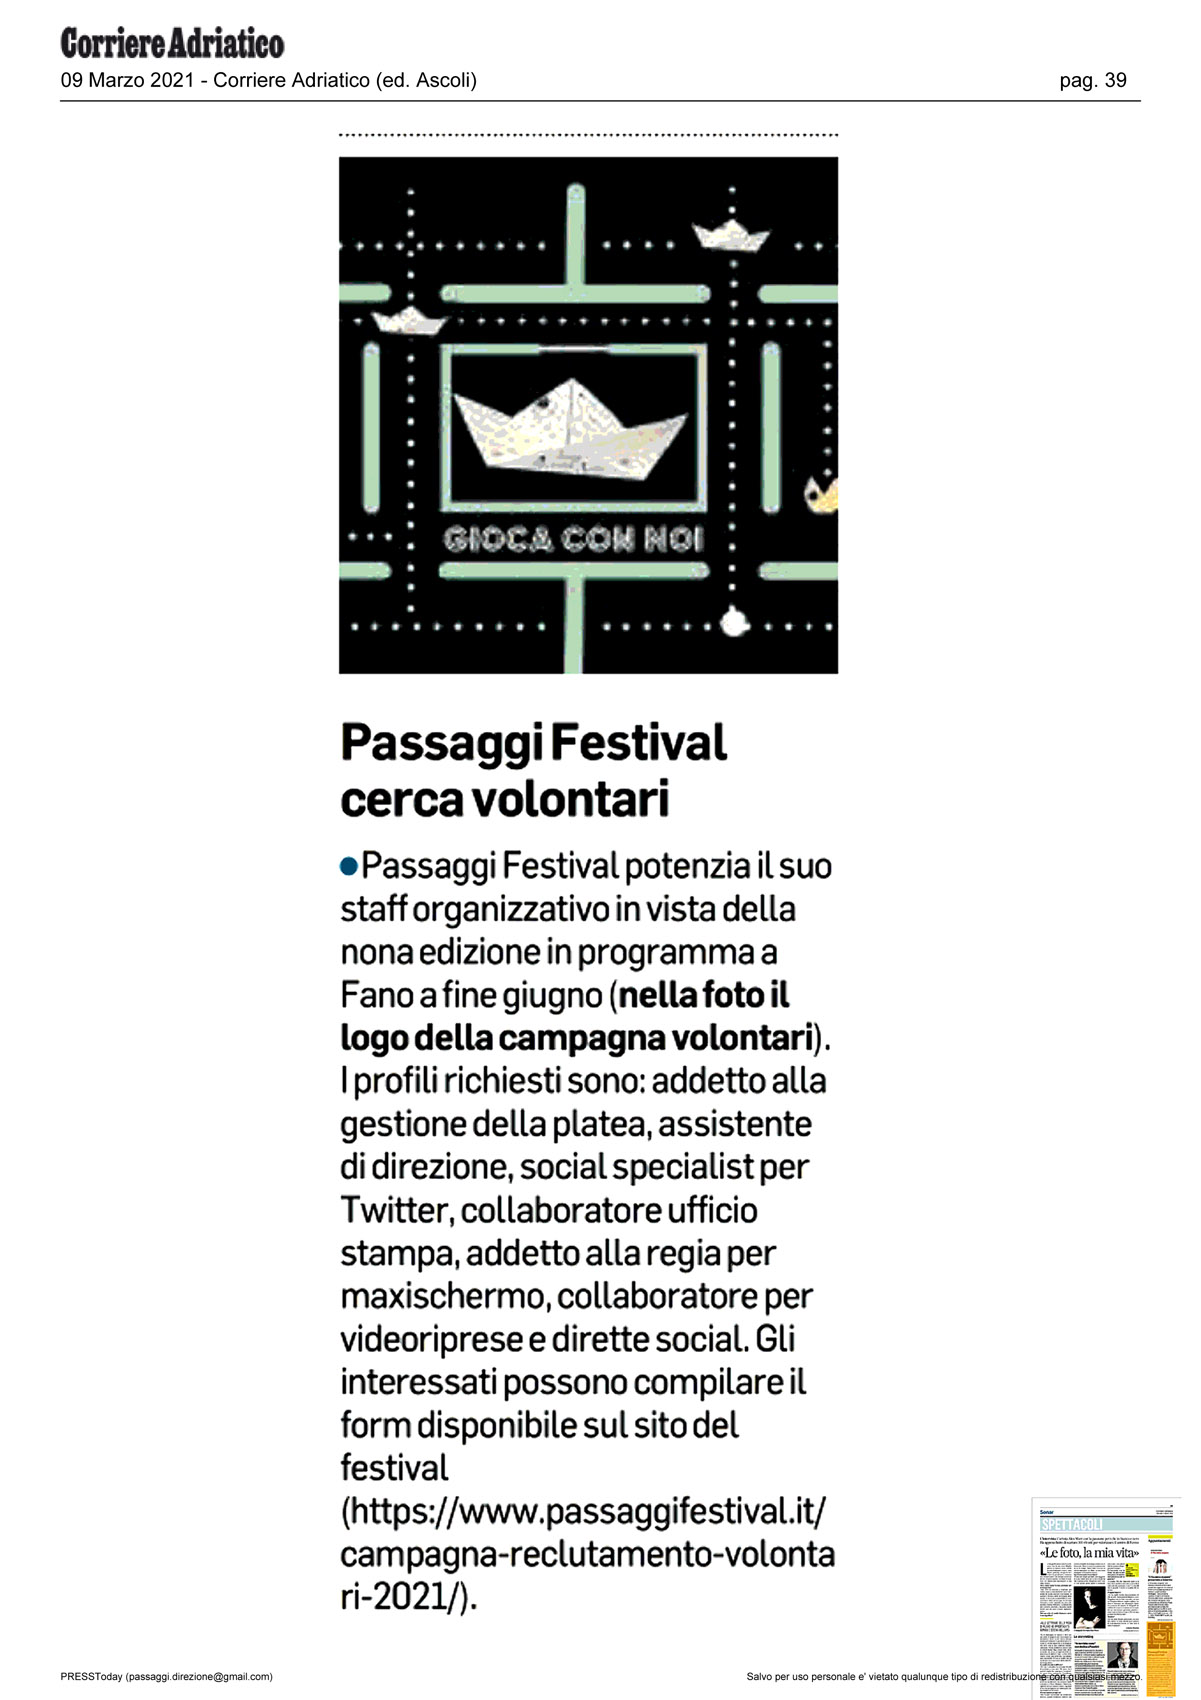 Corriere_Adriatico_passaggi_festival_cerca_volontari